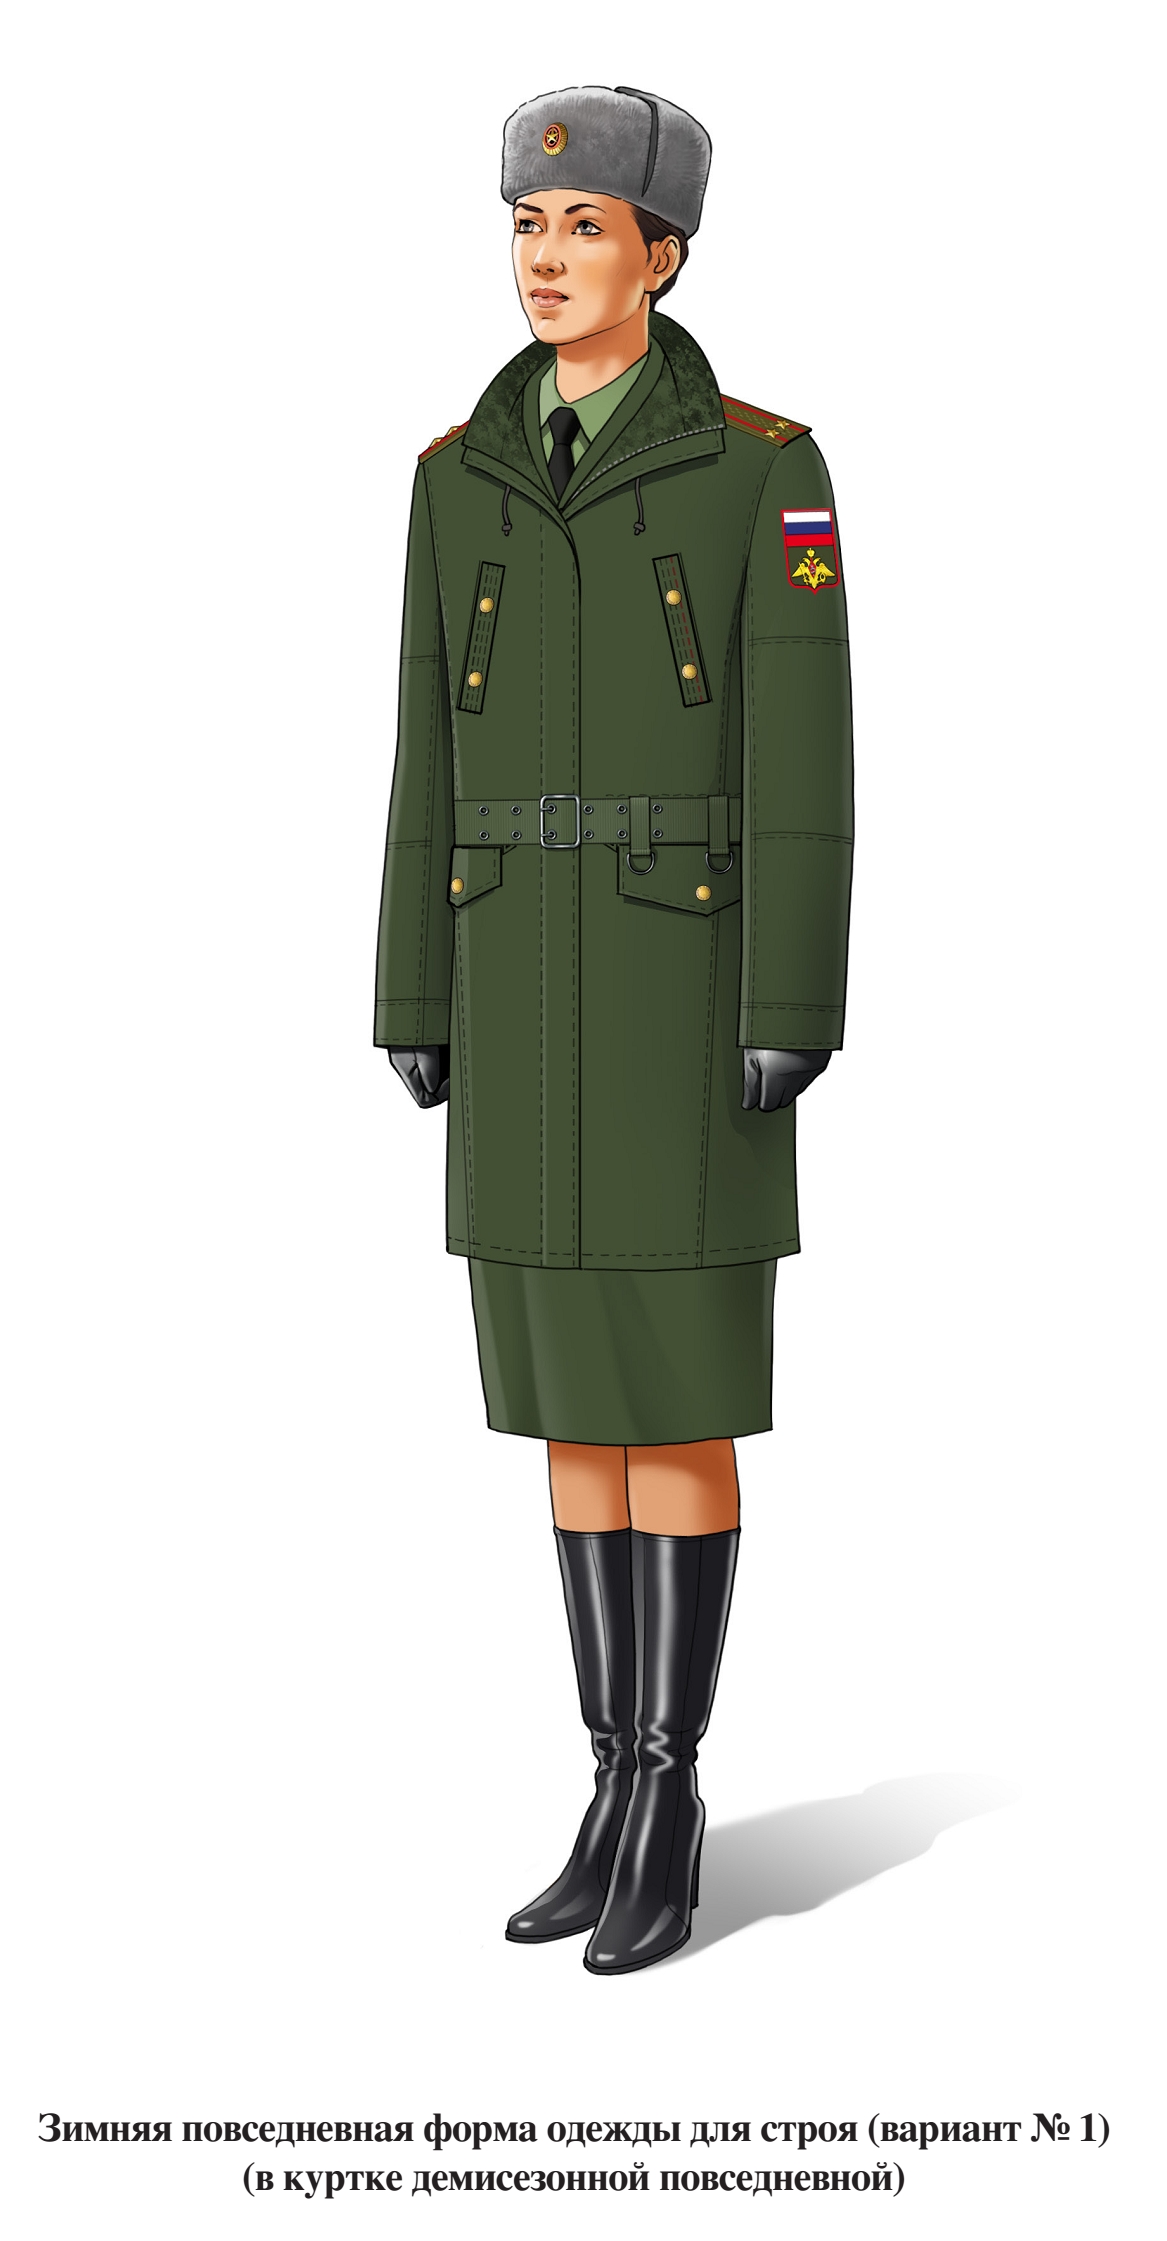 Зимняя повседневная форма военнослужащих женского пола для строя